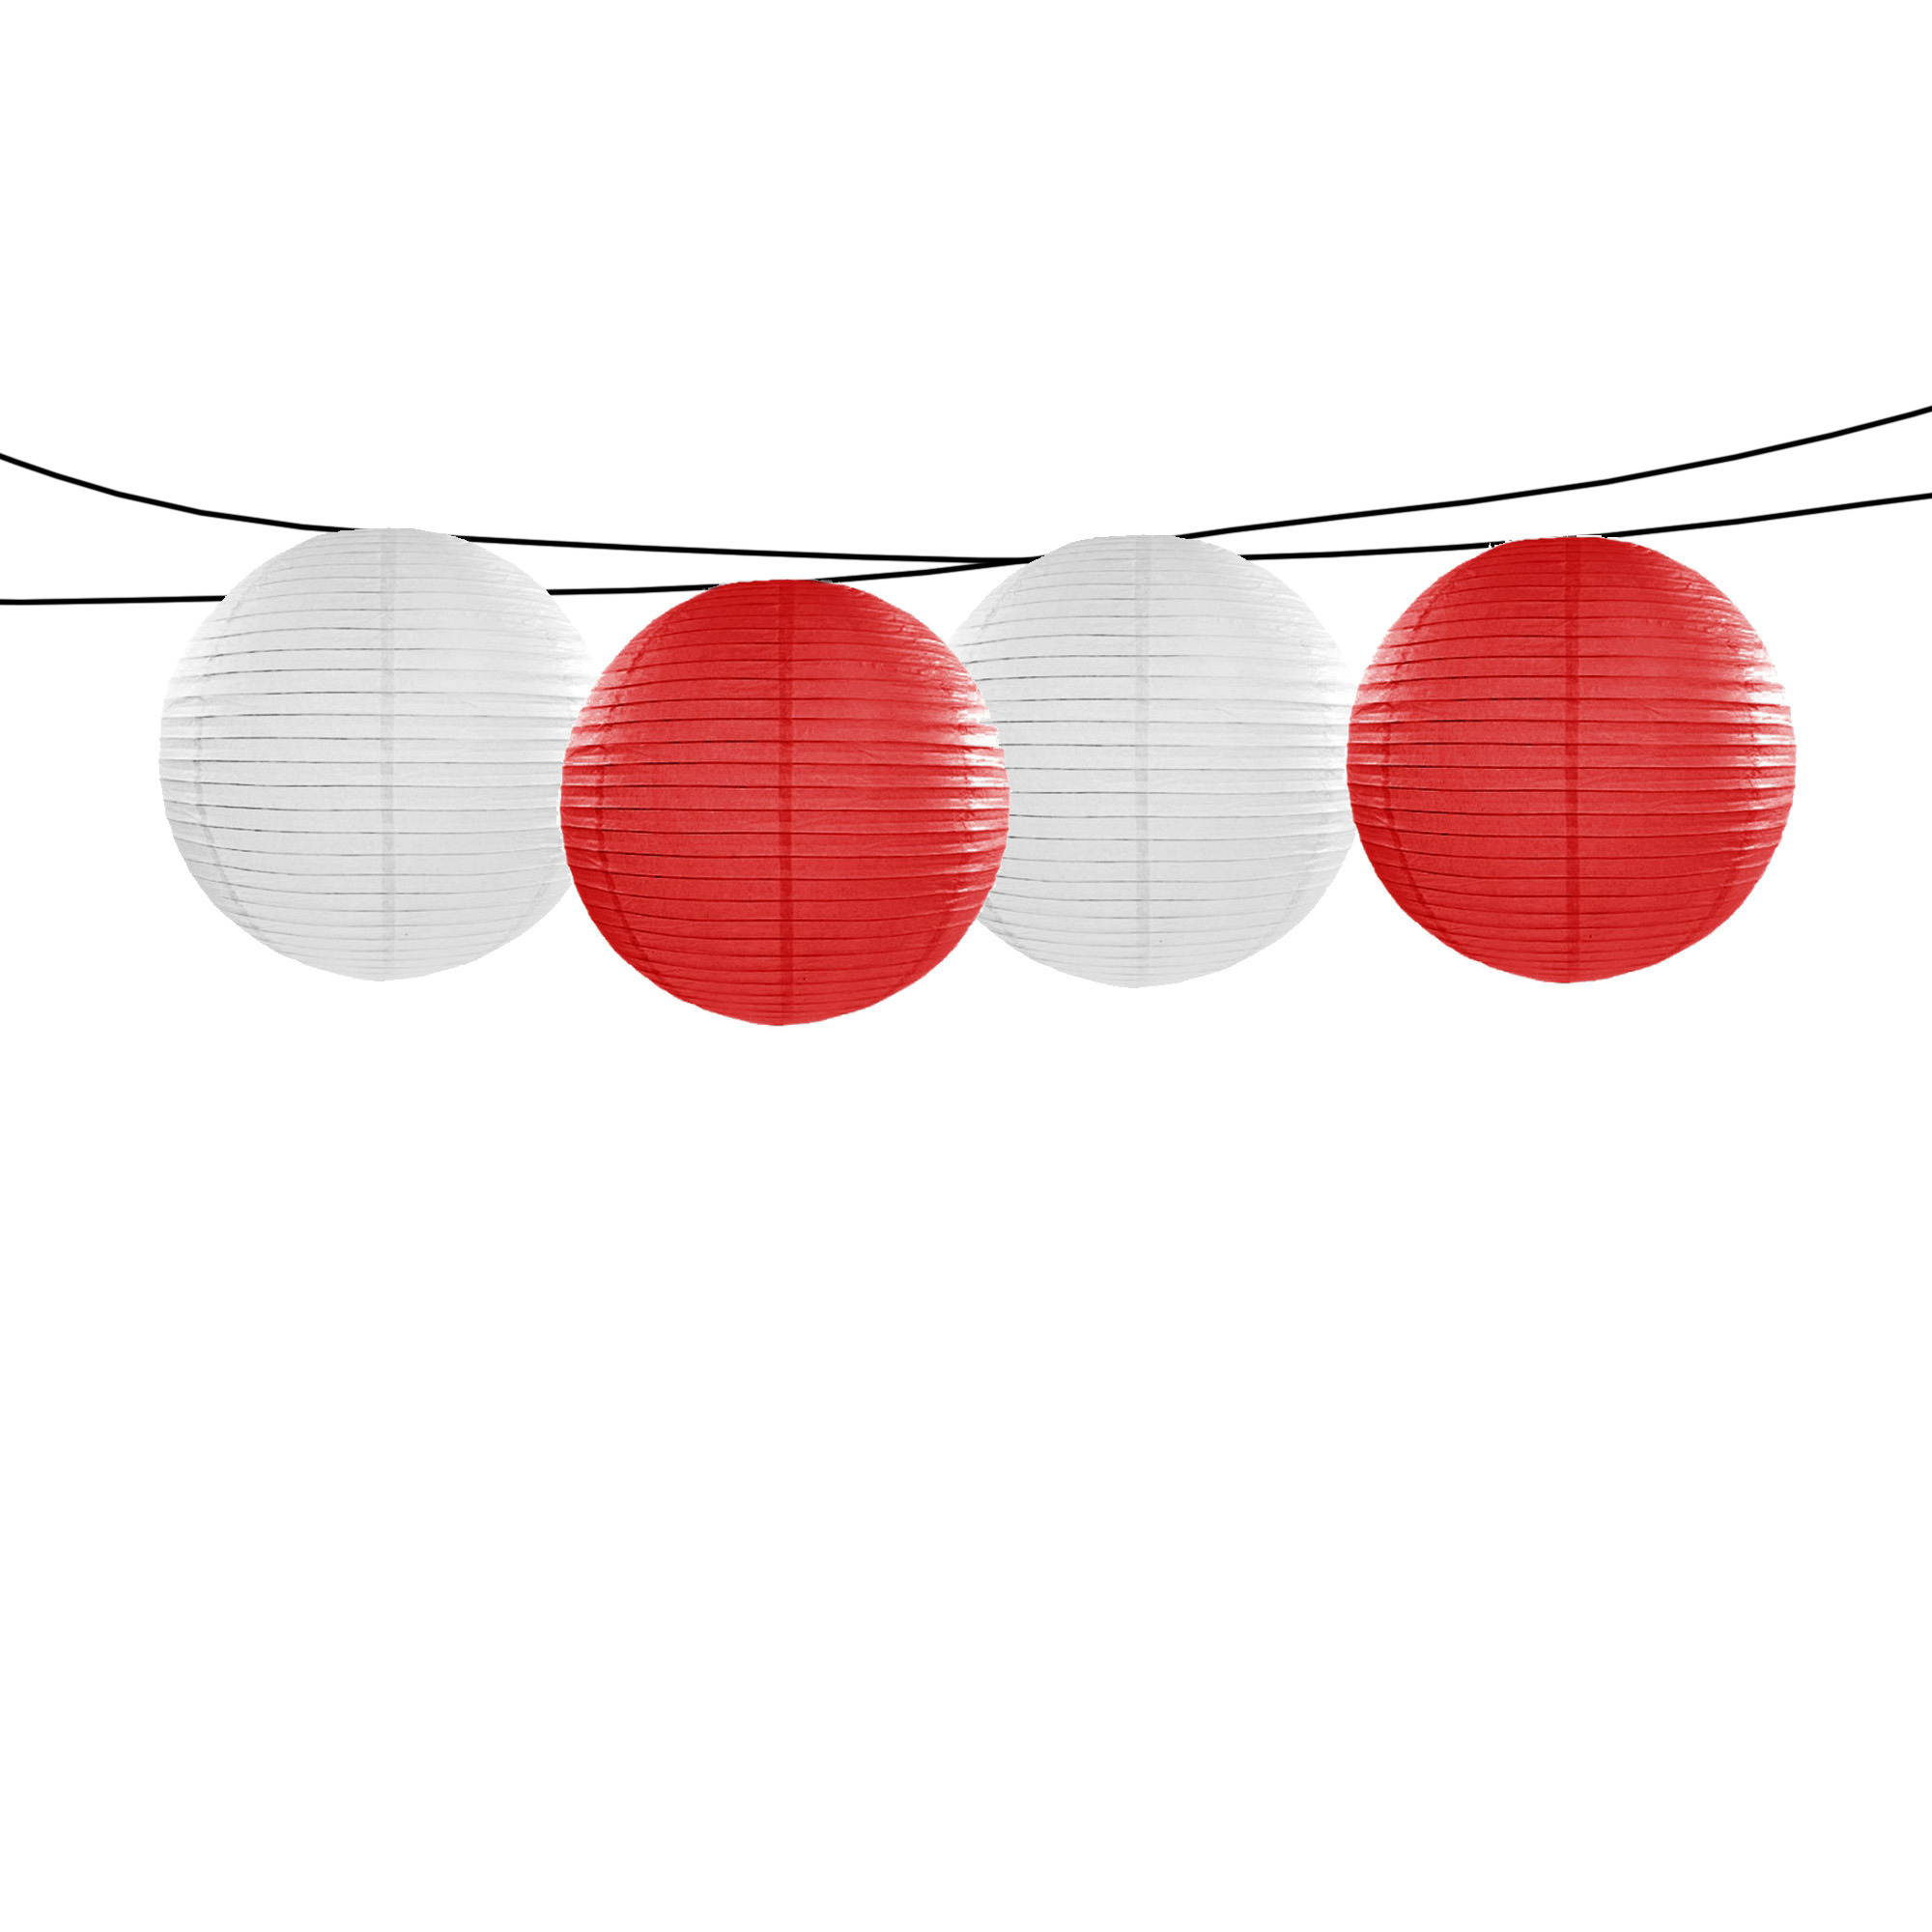 Feest-tuin versiering 4x stuks luxe bol-vorm lampionnen rood en wit dia 35 cm